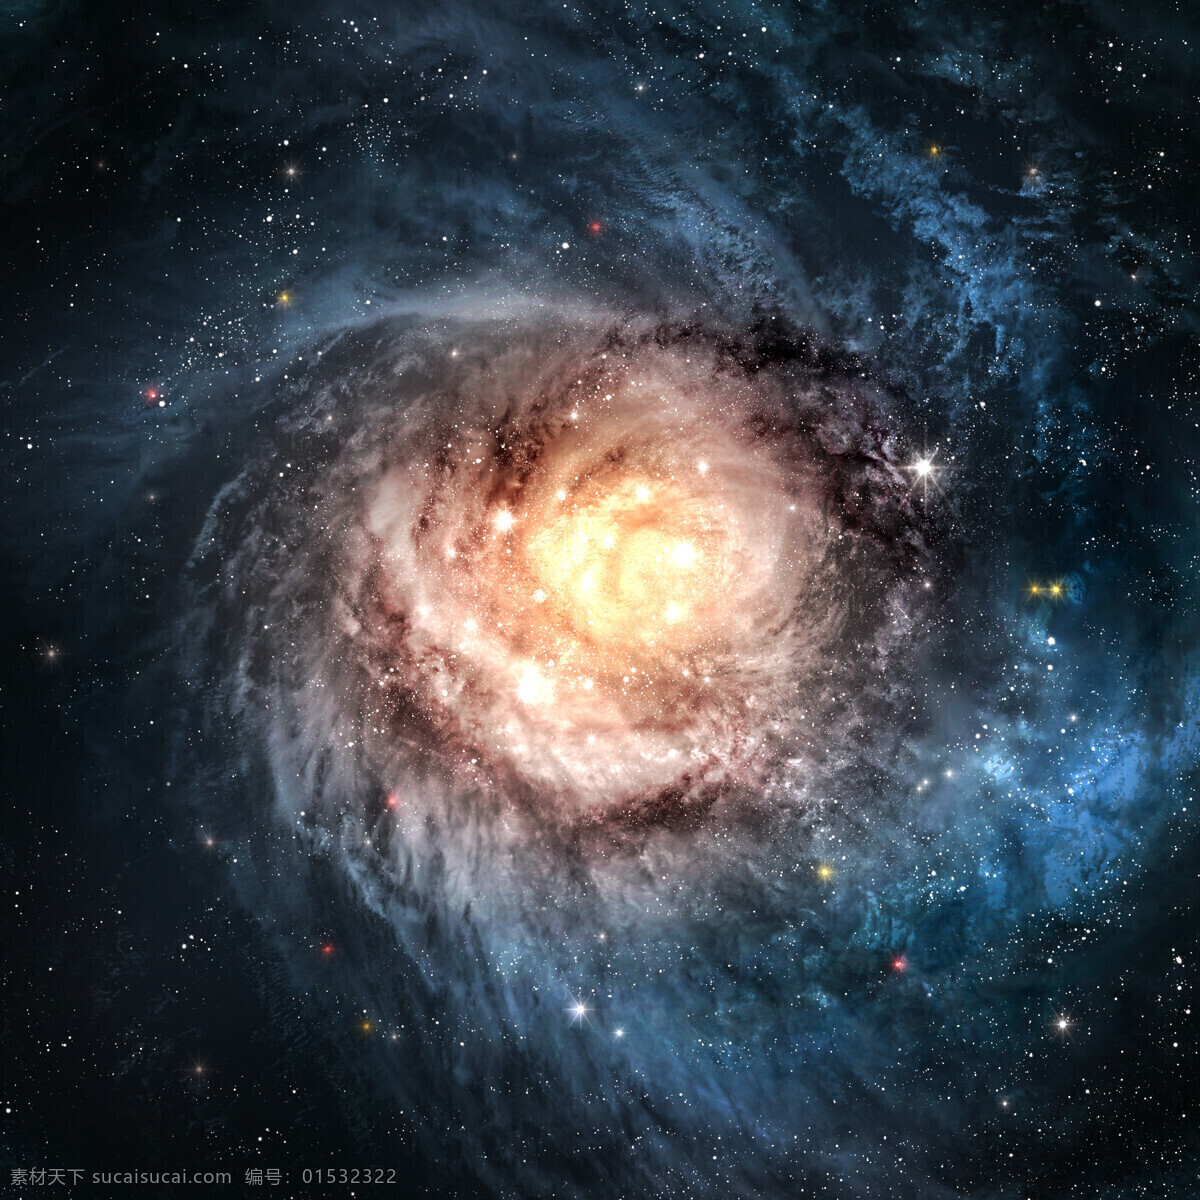 星系图片素材 星球 星系 宇宙 天空 奇观 夜景 天文 宇宙太空 环境家居